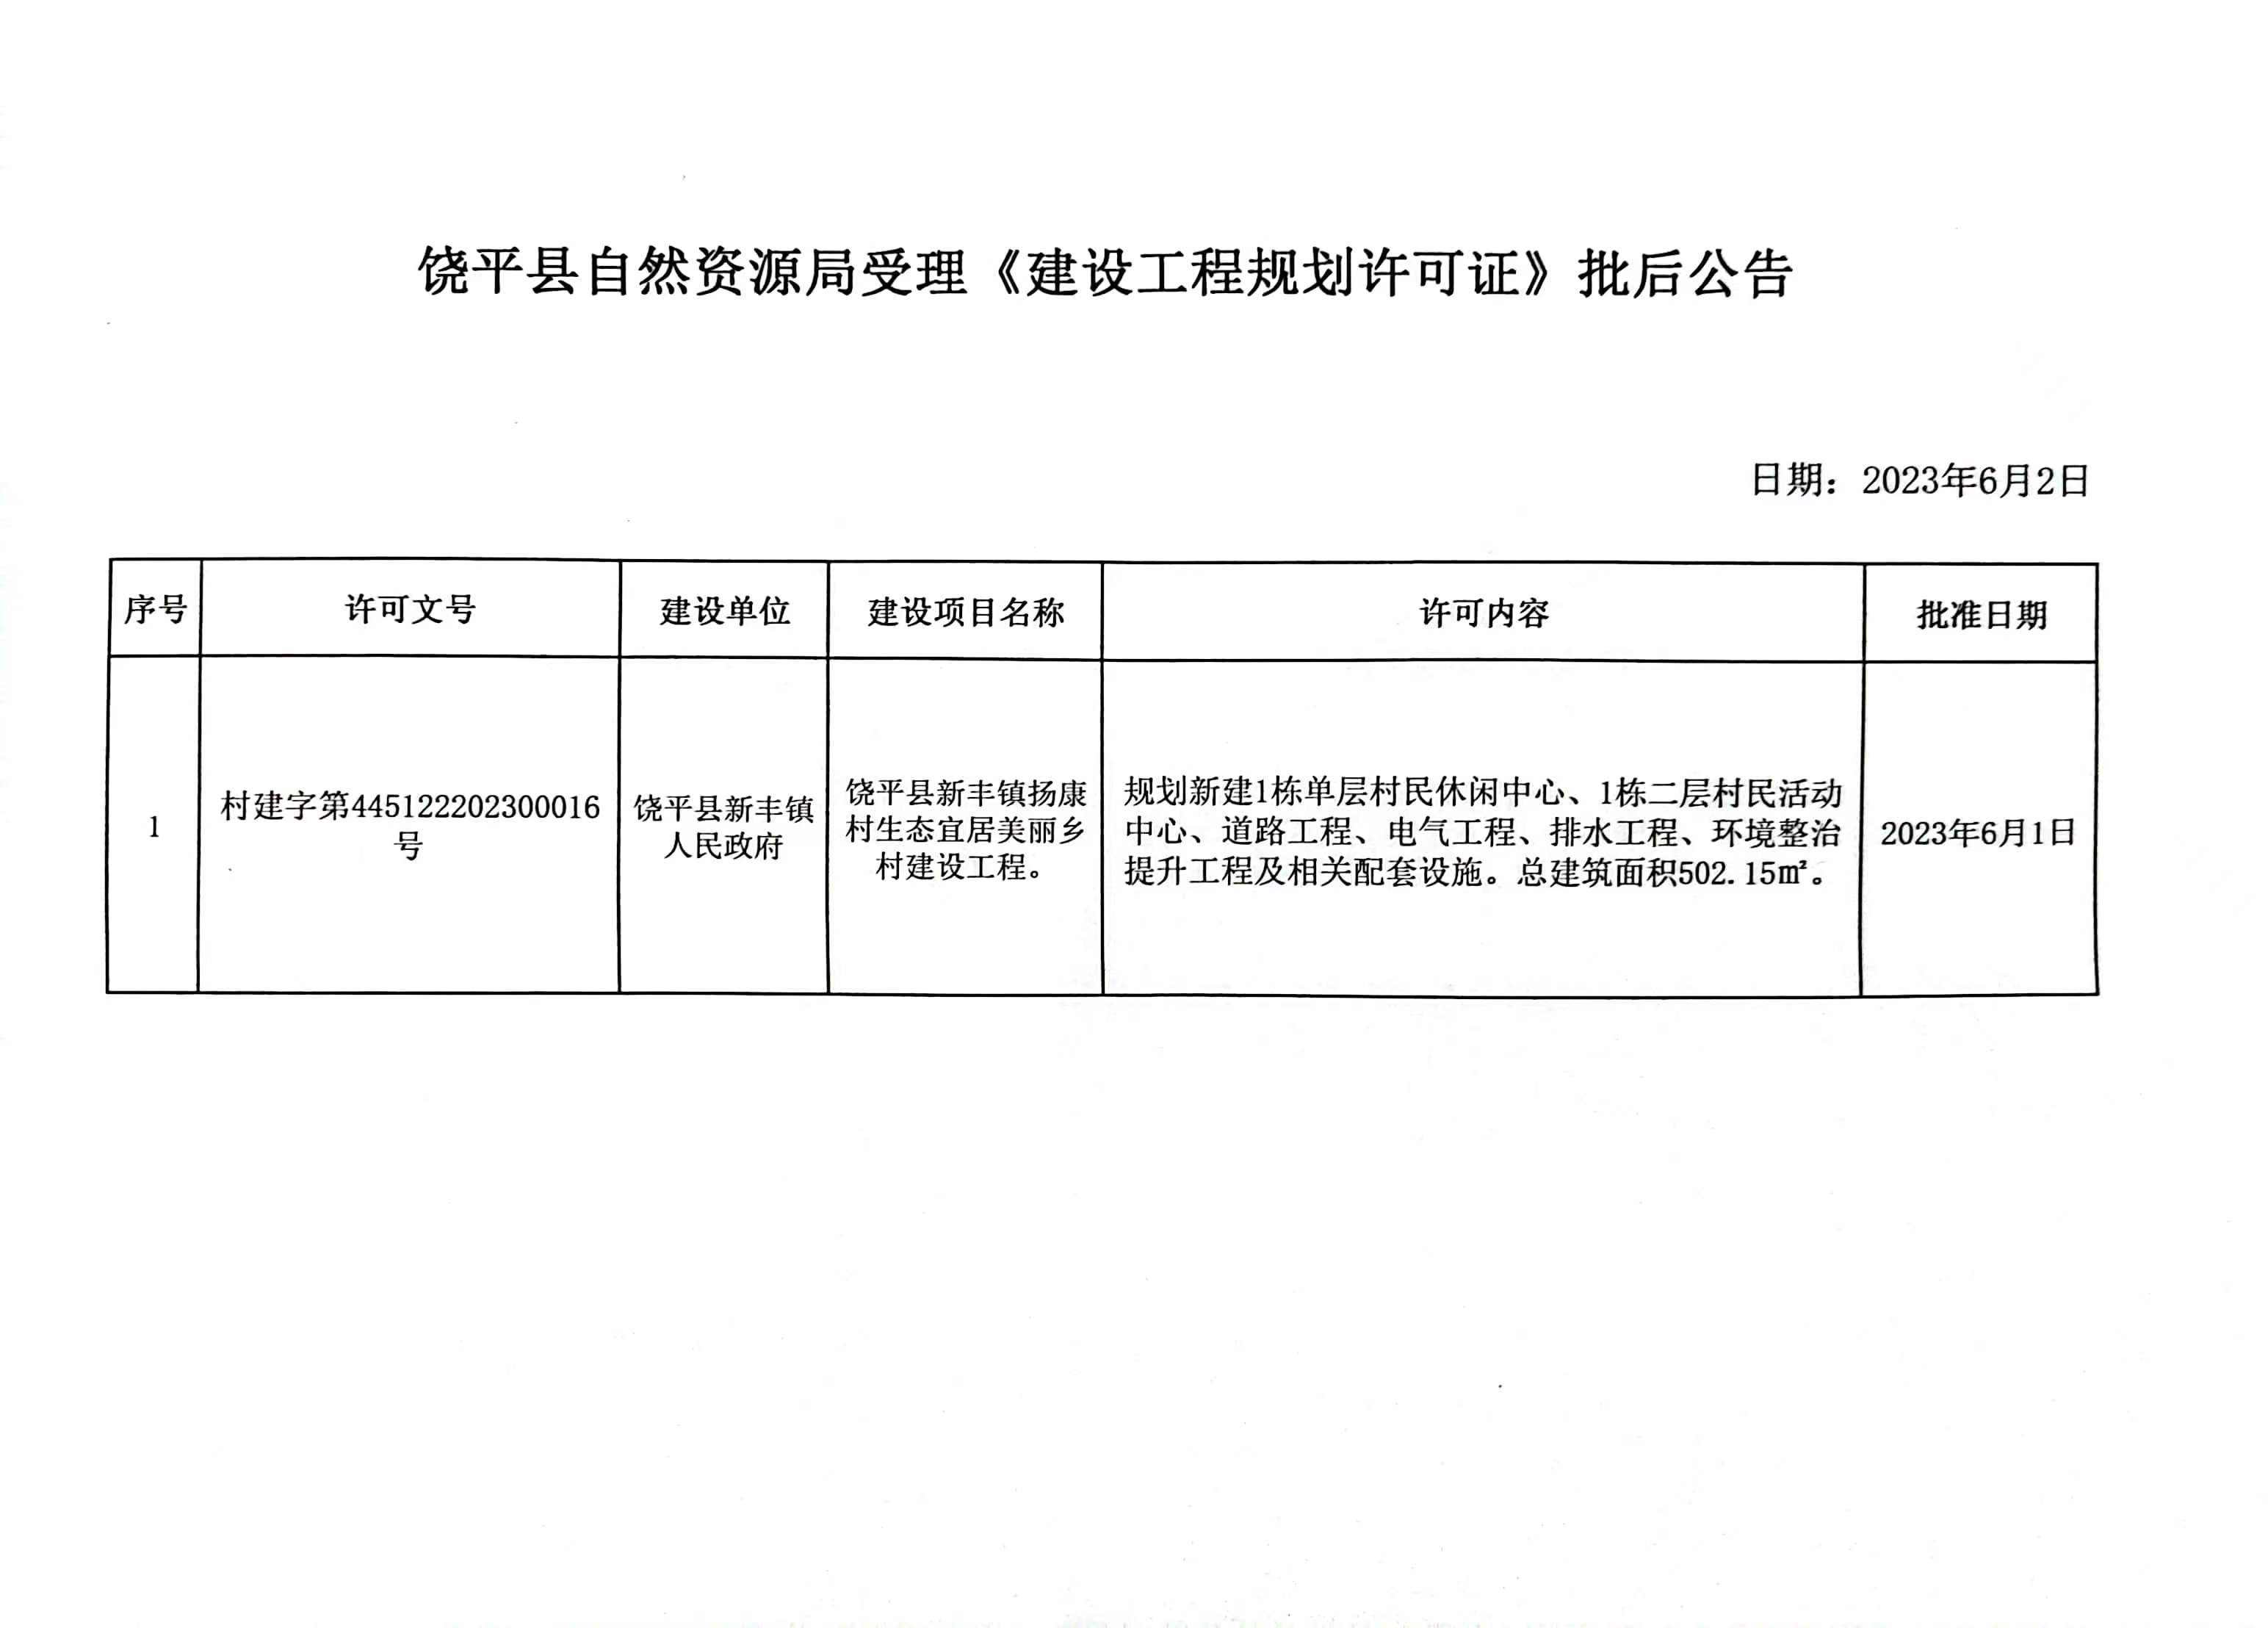 村2316新丰镇扬康村《建设工程规划许可证》批后公告.jpg